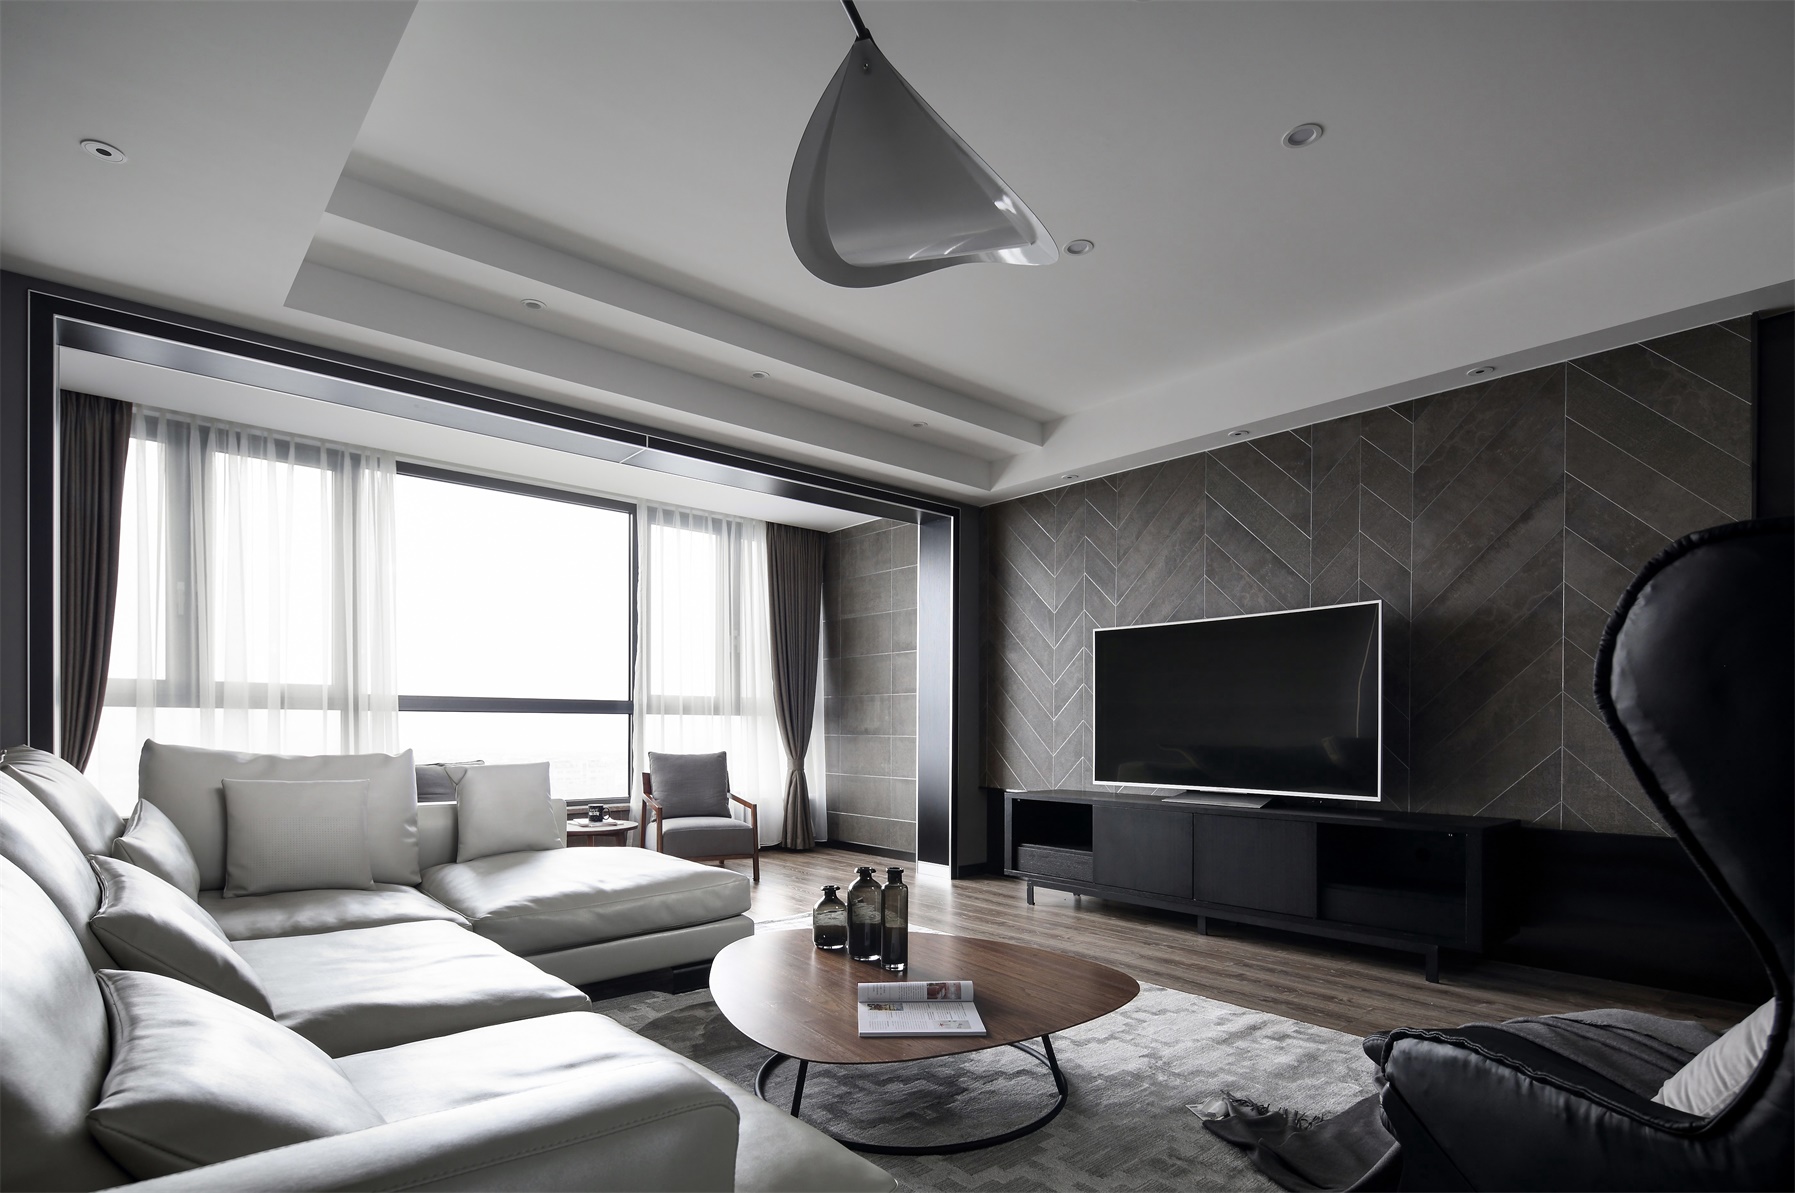 客厅面积空间宽敞，空间使用暗色系打造，局部亮色沙发点缀，彰显现代家居质感。